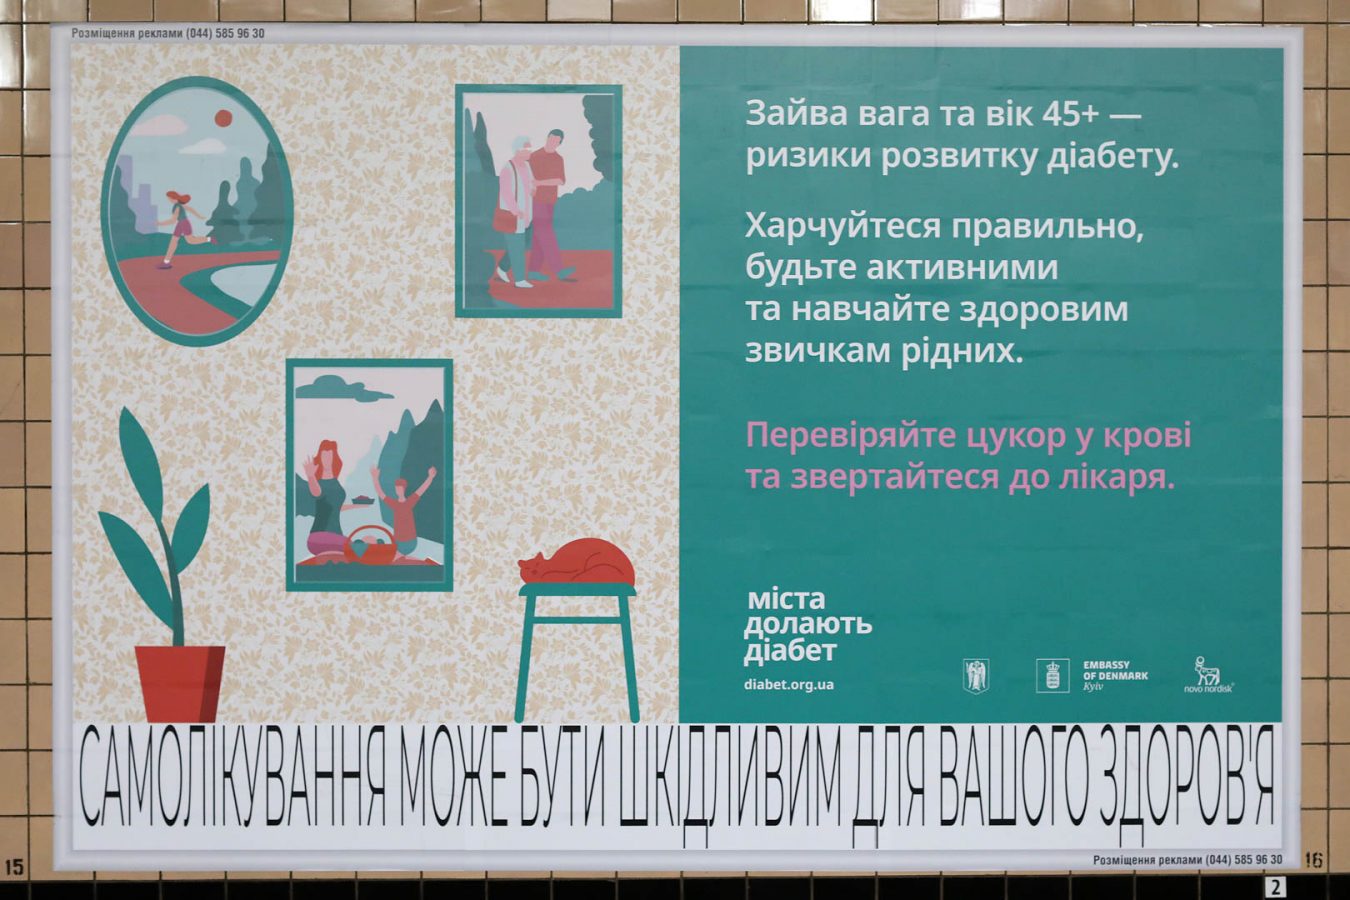 Міста долають діабет: Агенція OneHealth реалізувала інформаційну кампанію у Київському метрополітені